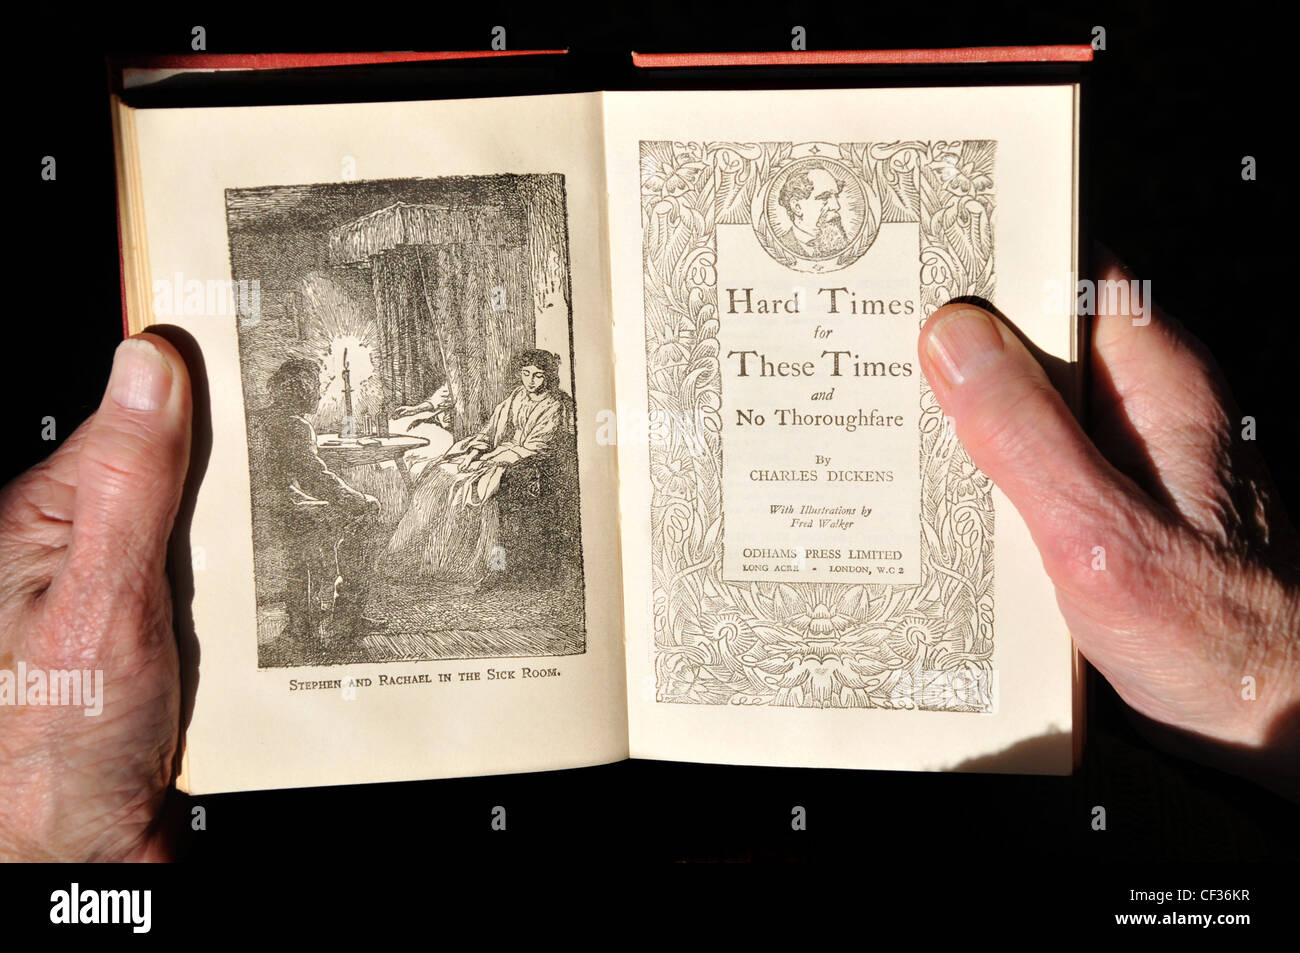 Ein altes anschauliches Buch "Harte Zeiten für These Times" von Charles Dickens, von einem älteren Mann gelesen werden. Stockfoto